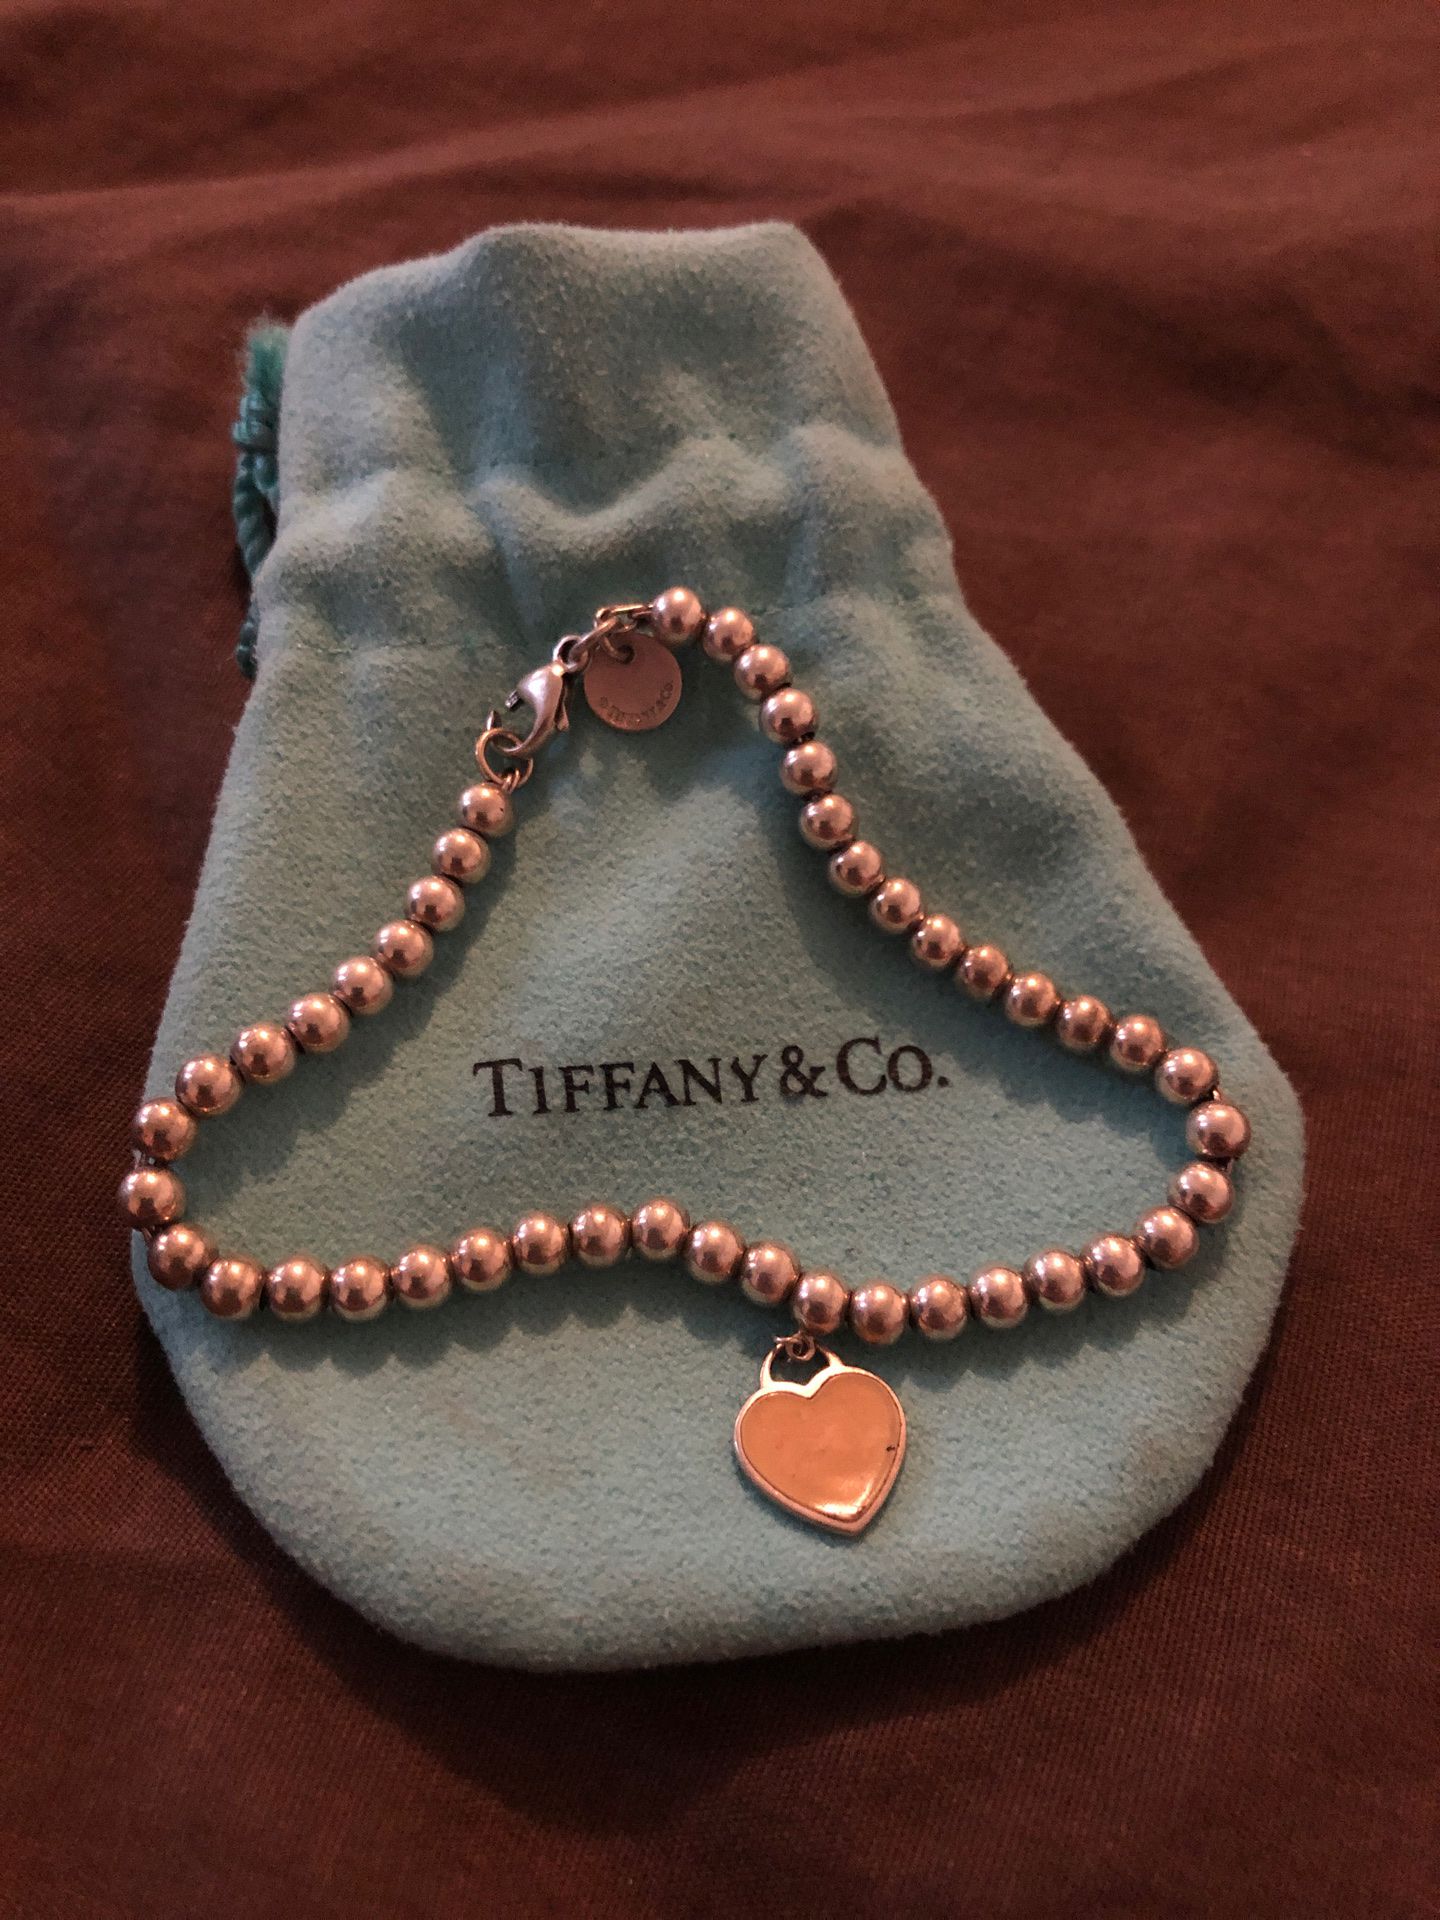 Tiffany&Co Heart Tag Bracelet